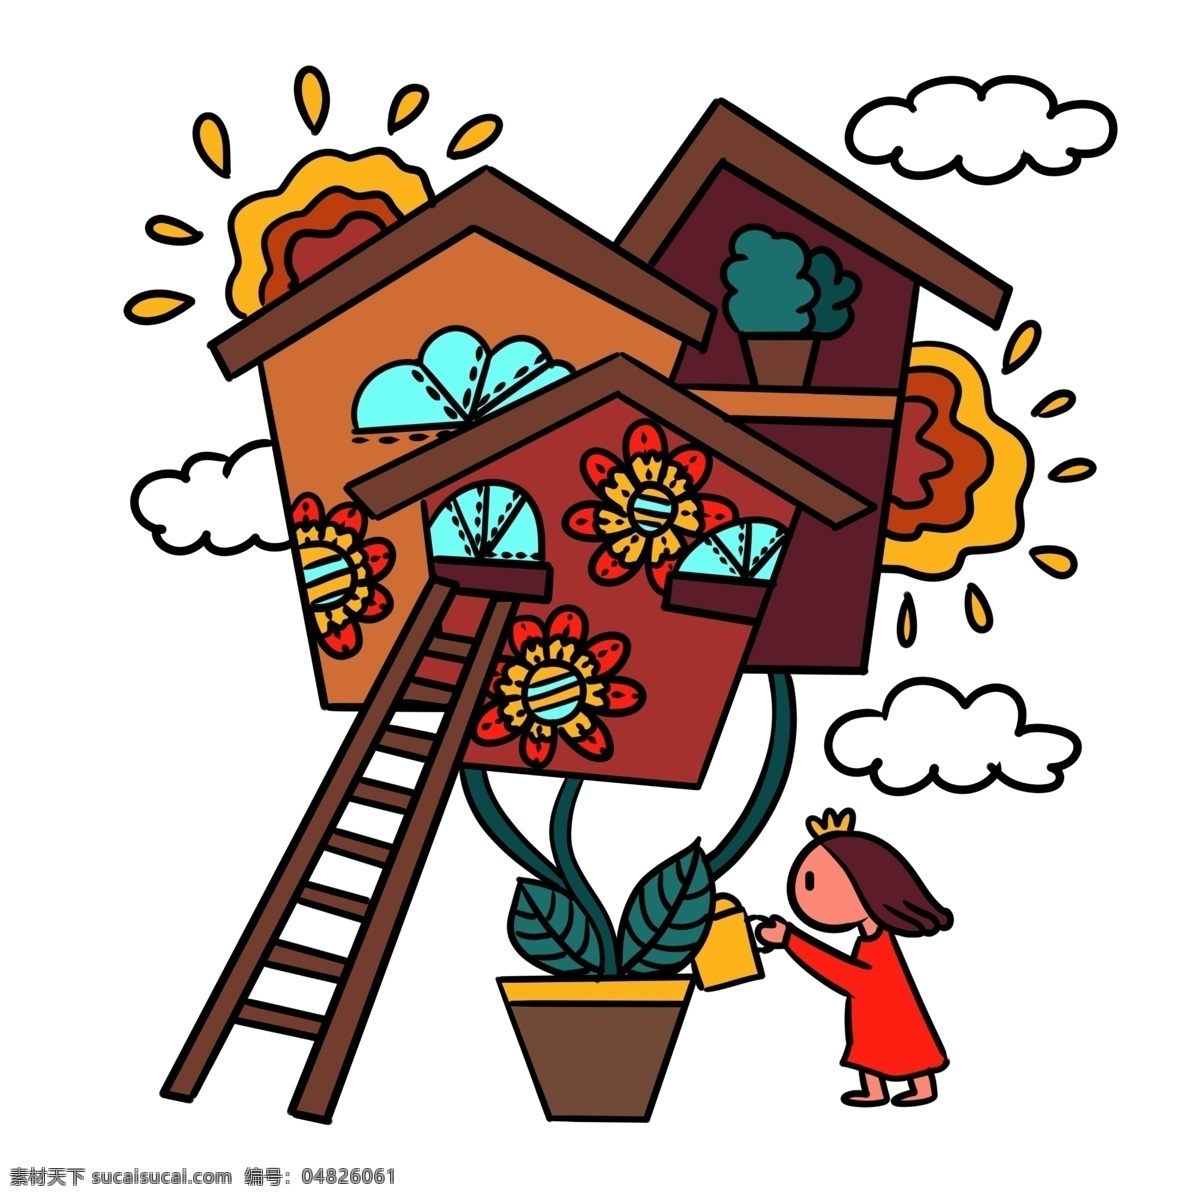 手绘 卡通 可爱 童话 小女孩 房子 矢量 免抠 梦境 楼梯 植物 太阳 云朵 儿童故事